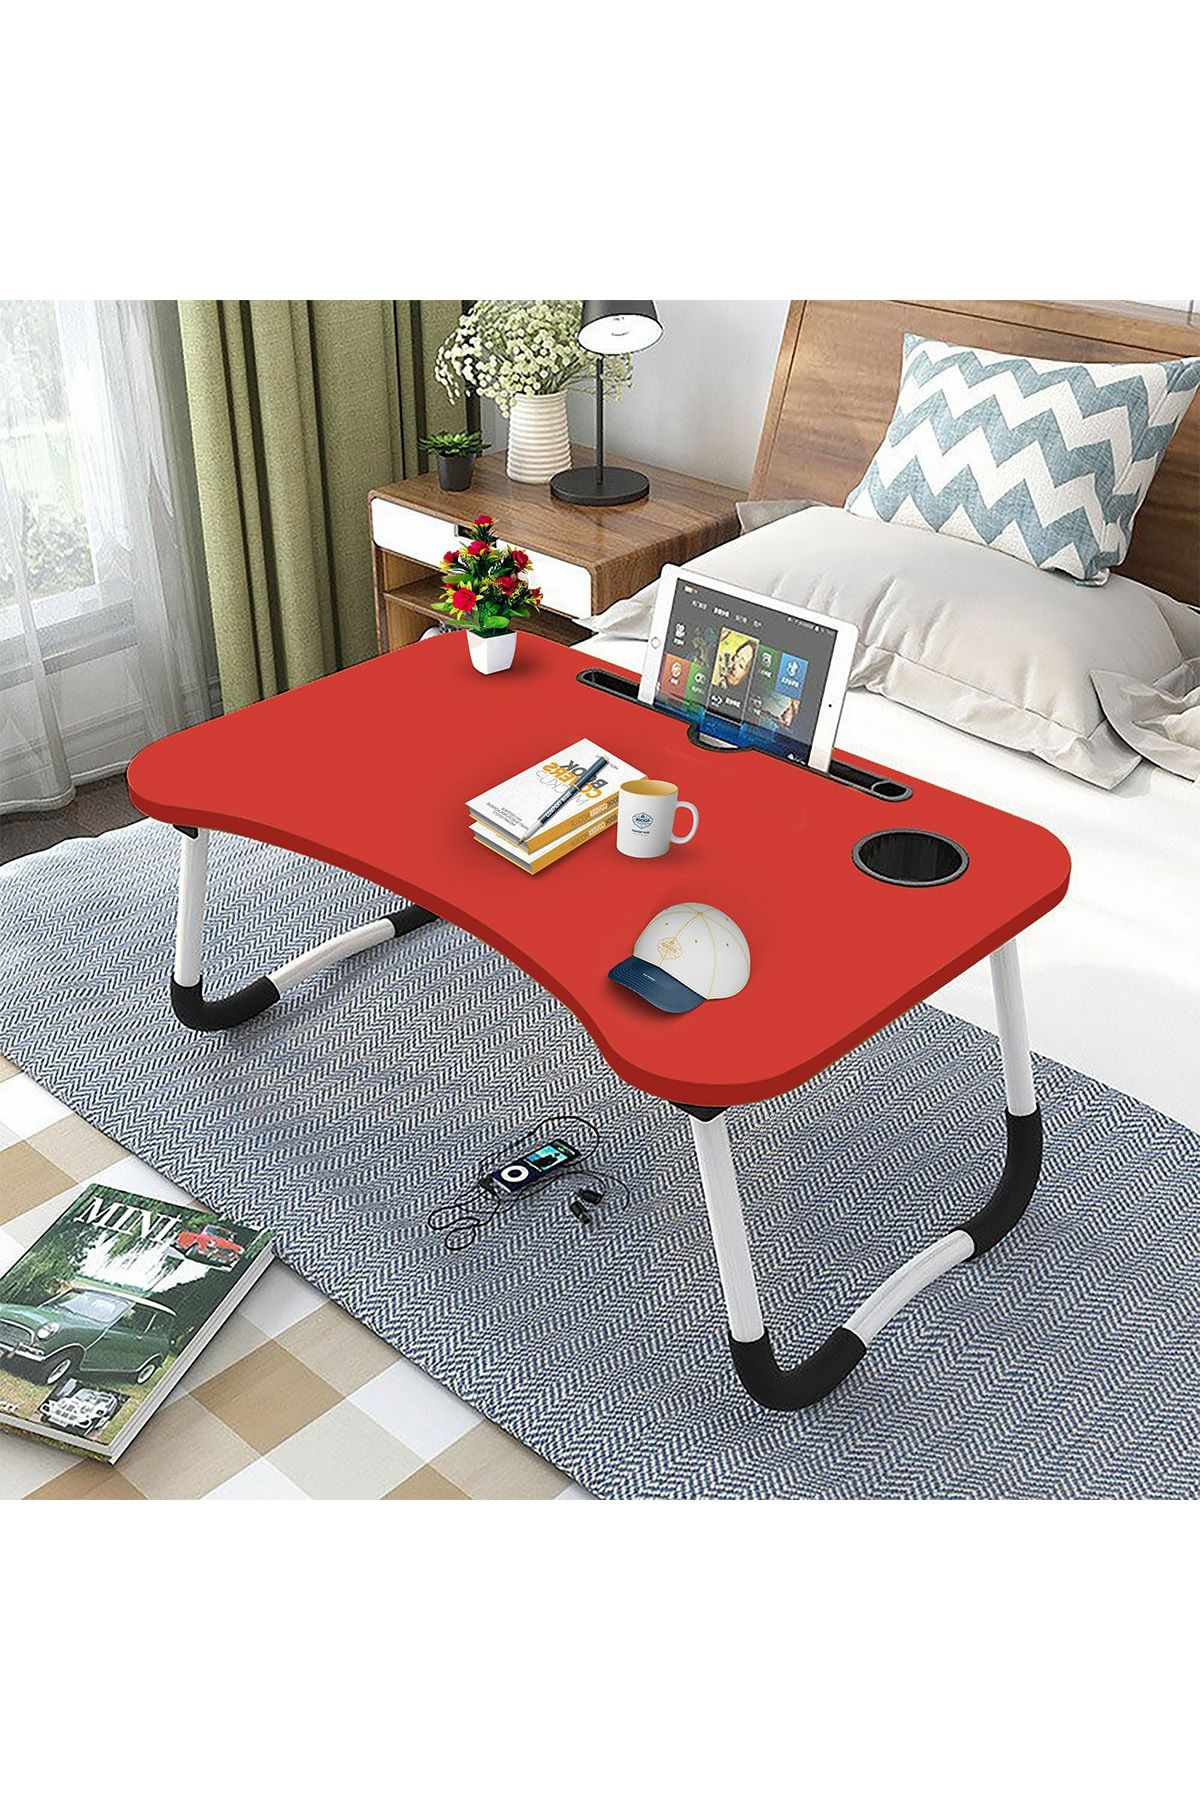 hodbehod Portatif Atlantik Kırmızı Renk Laptop Sehpası Katlanabilir Çalışma Masası Kahvaltı Masası